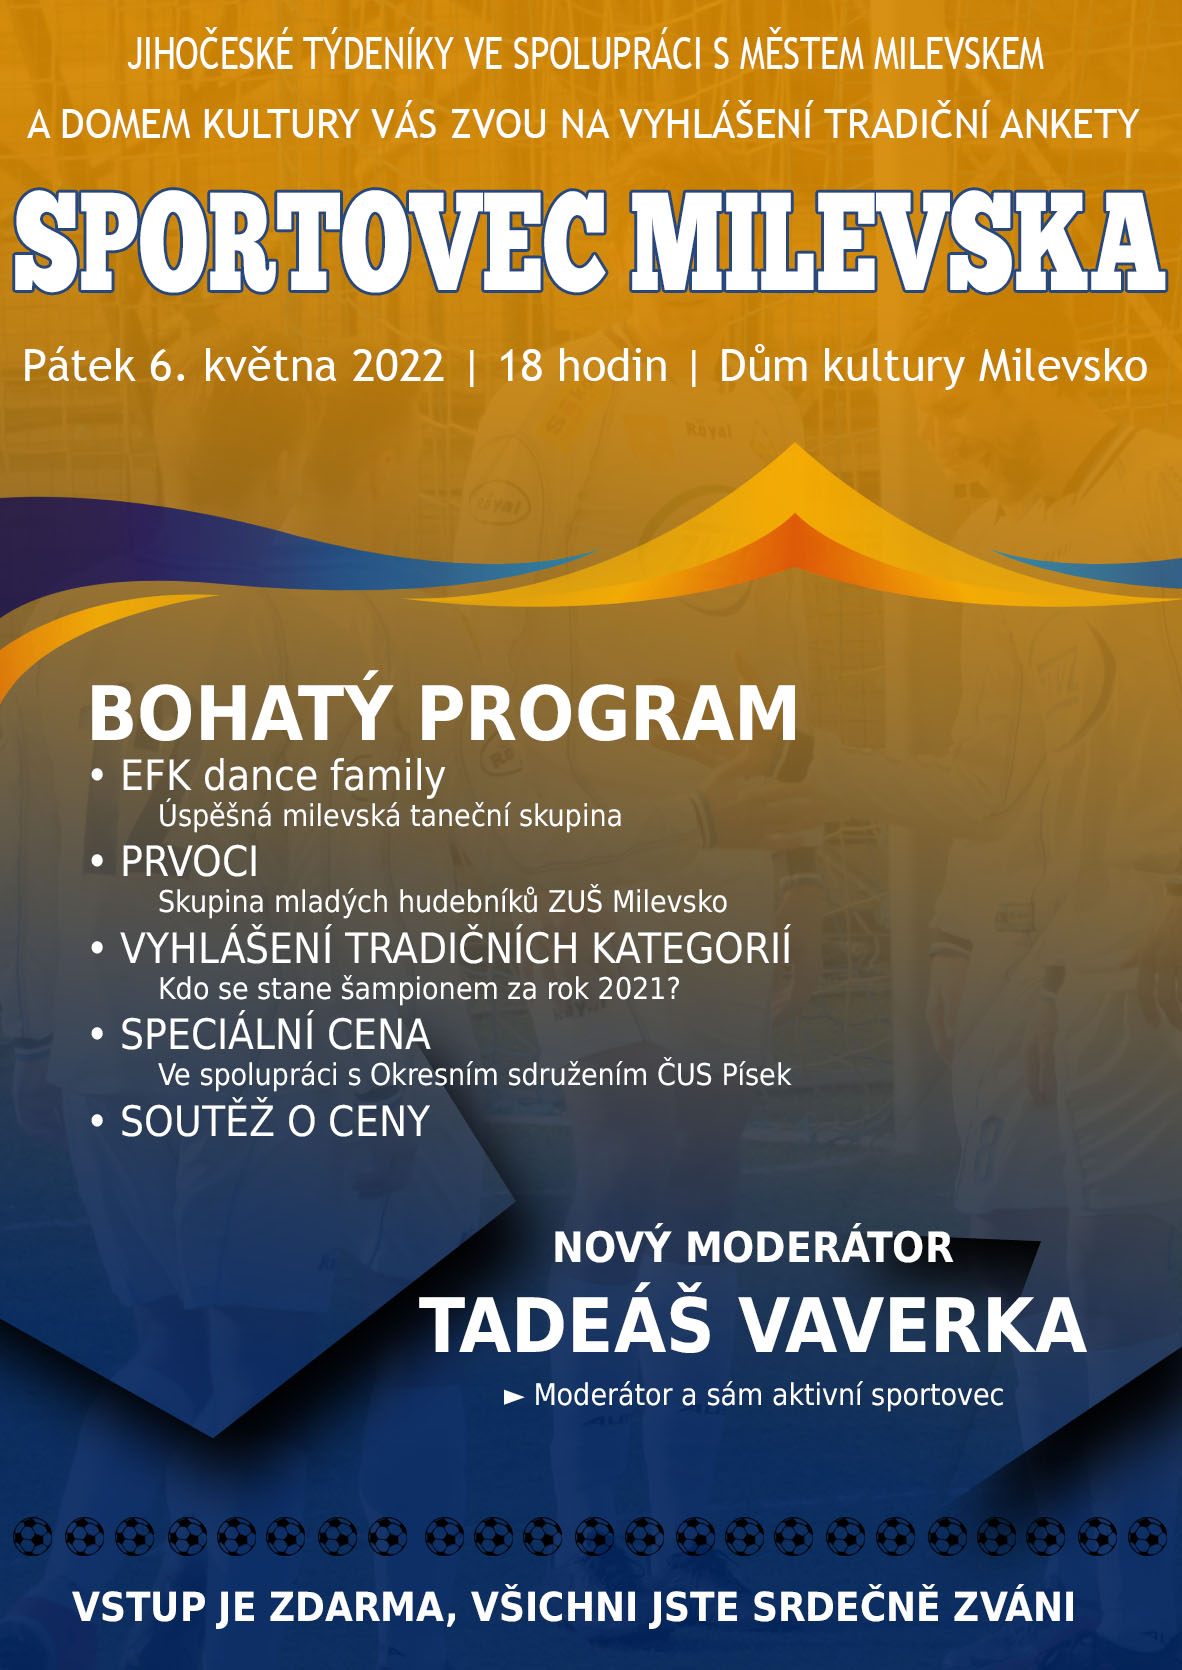 Plakát Sportovec města Milevska 2021